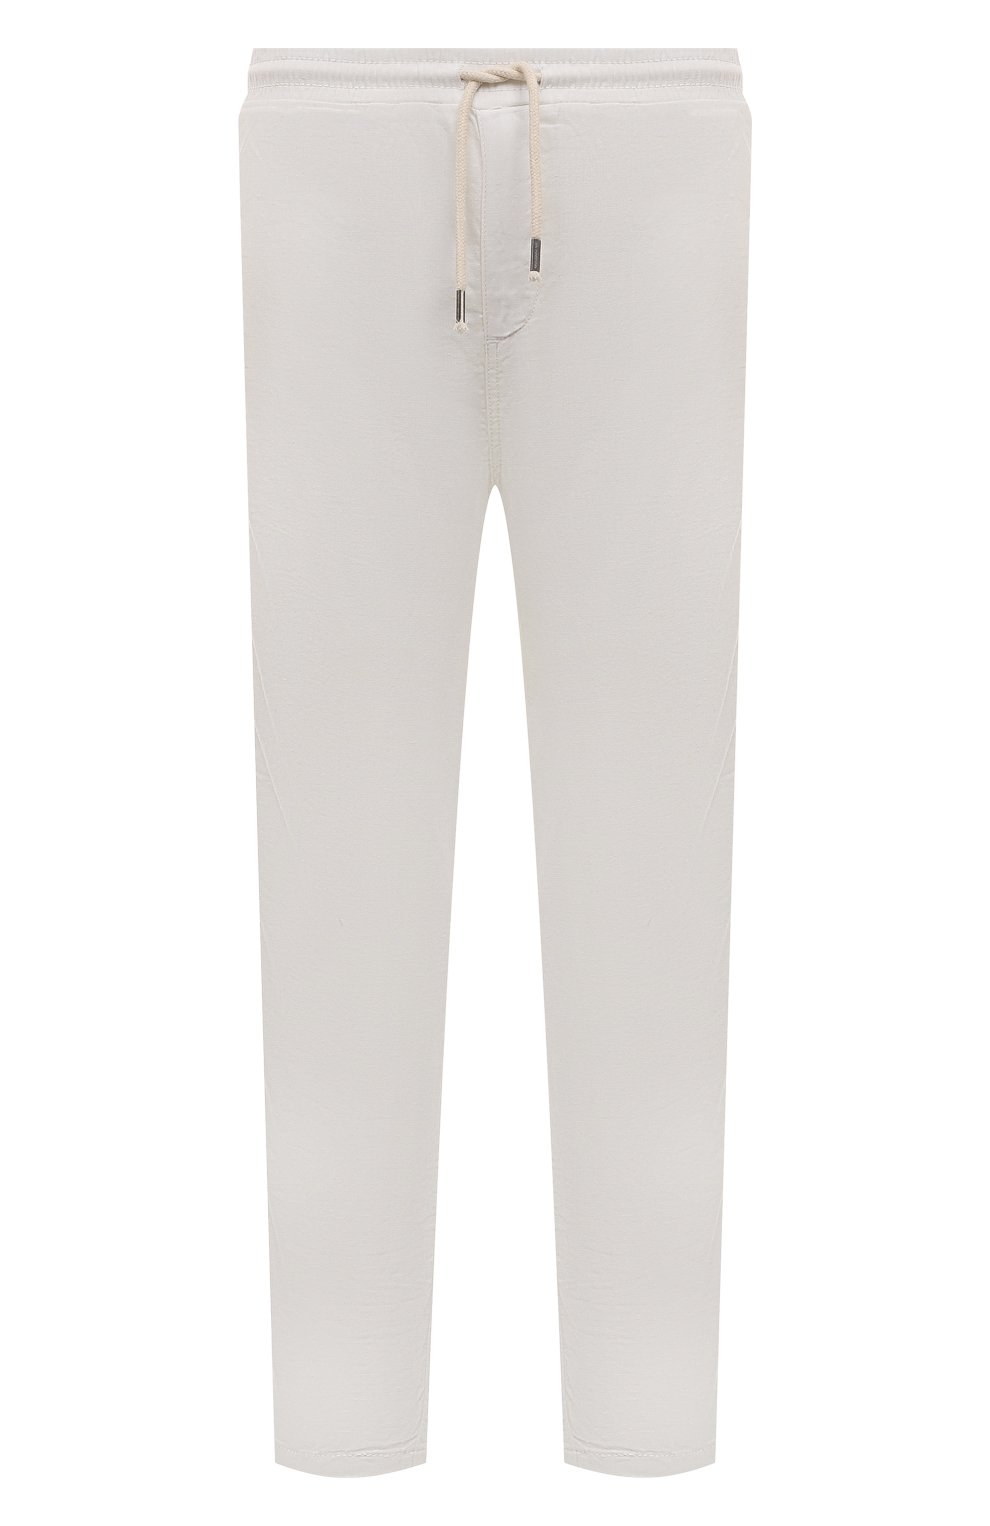 Фото Мужские белые брюки из хлопка и льна LA MARTINA, арт. YMT021/TW445 Турция YMT021/TW445 